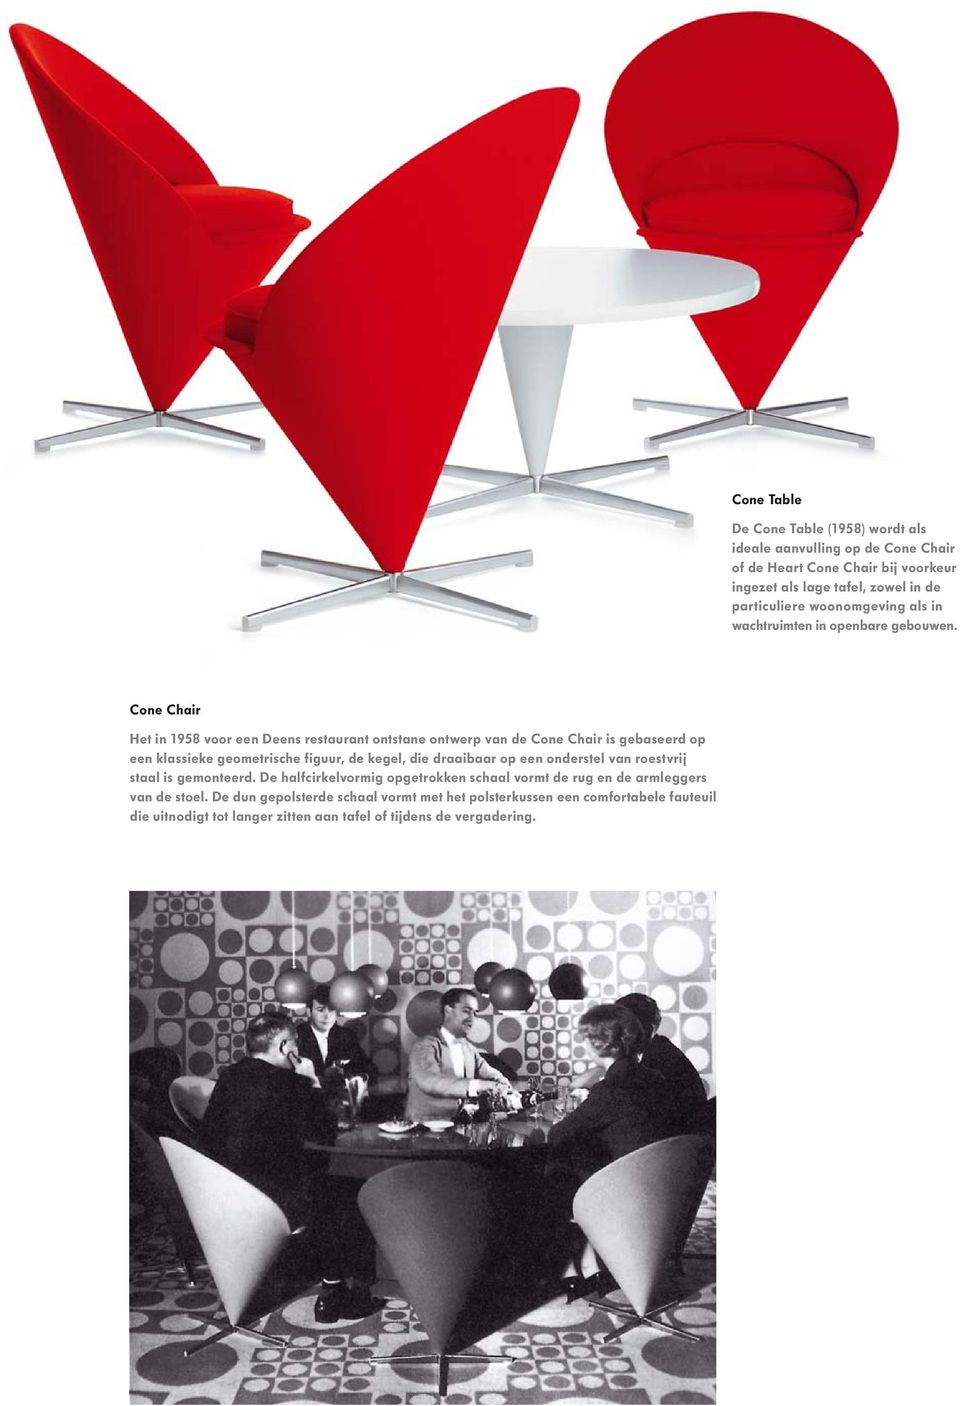 Cone Chair Het in 1958 voor een Deens restaurant ontstane ontwerp van de Cone Chair is gebaseerd op een klassieke geometrische figuur, de kegel, die draaibaar op